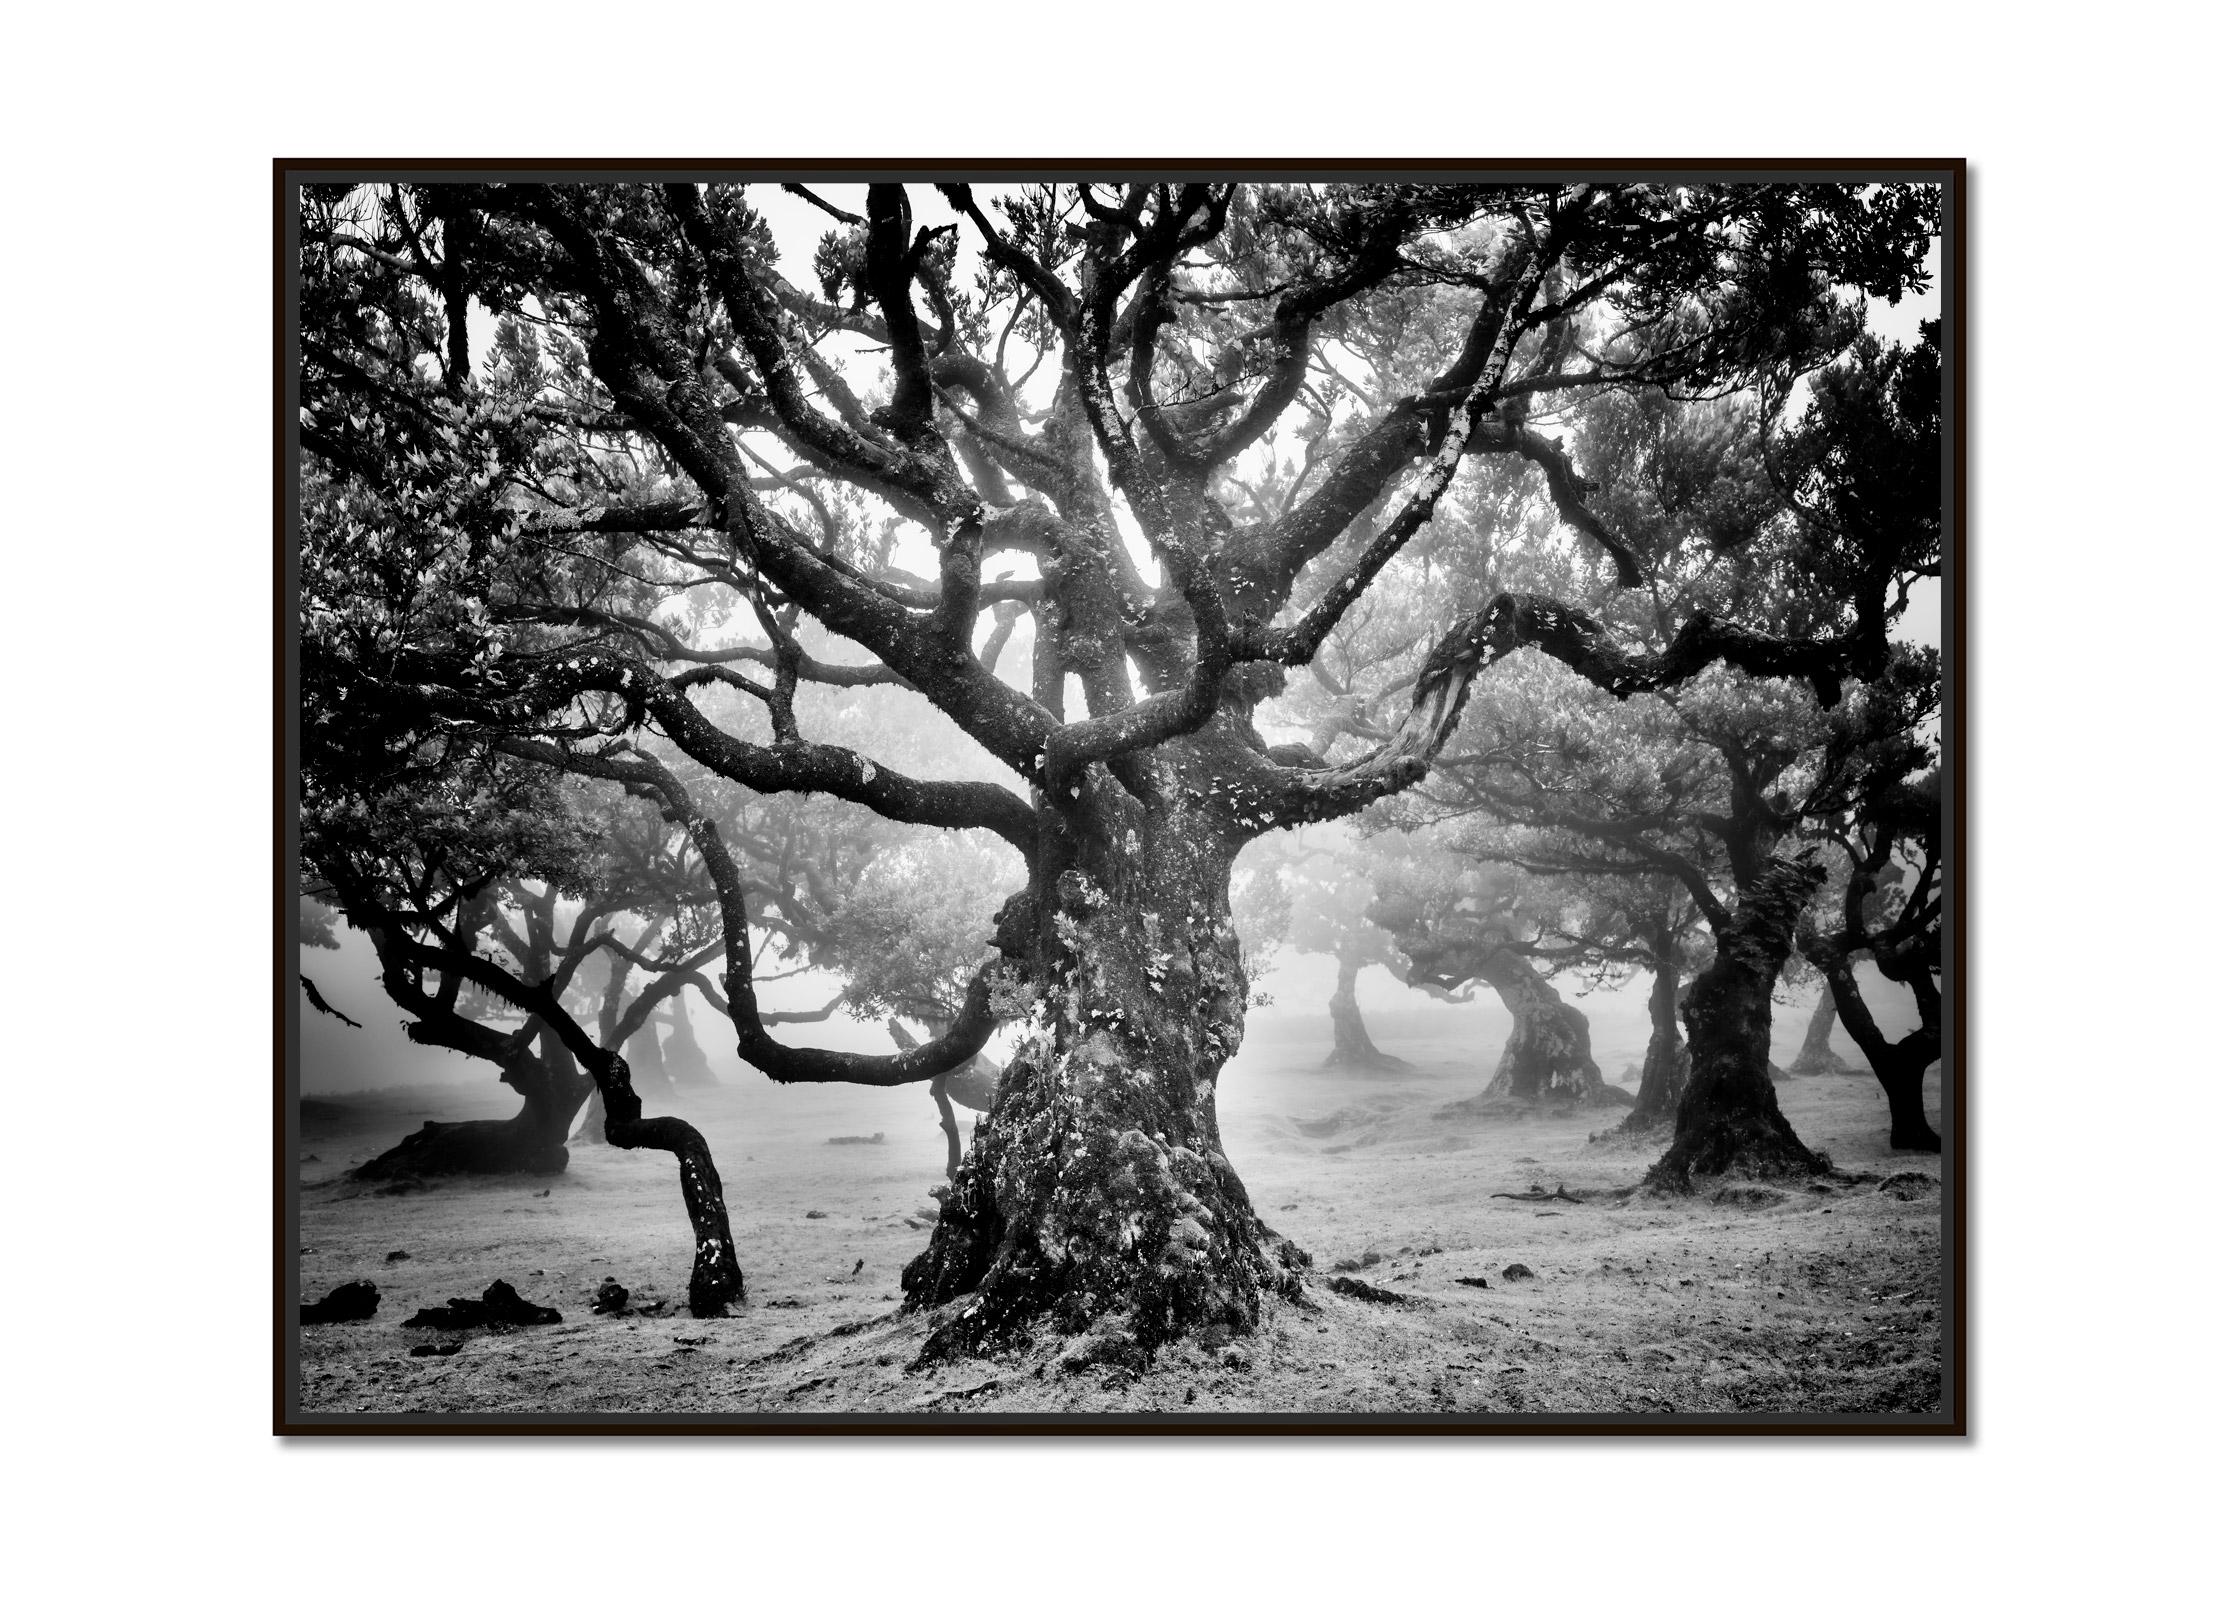 Ancienne forêt de Laurisilva, arbre mystique, photographie d'art en noir et blanc - Photograph de Gerald Berghammer